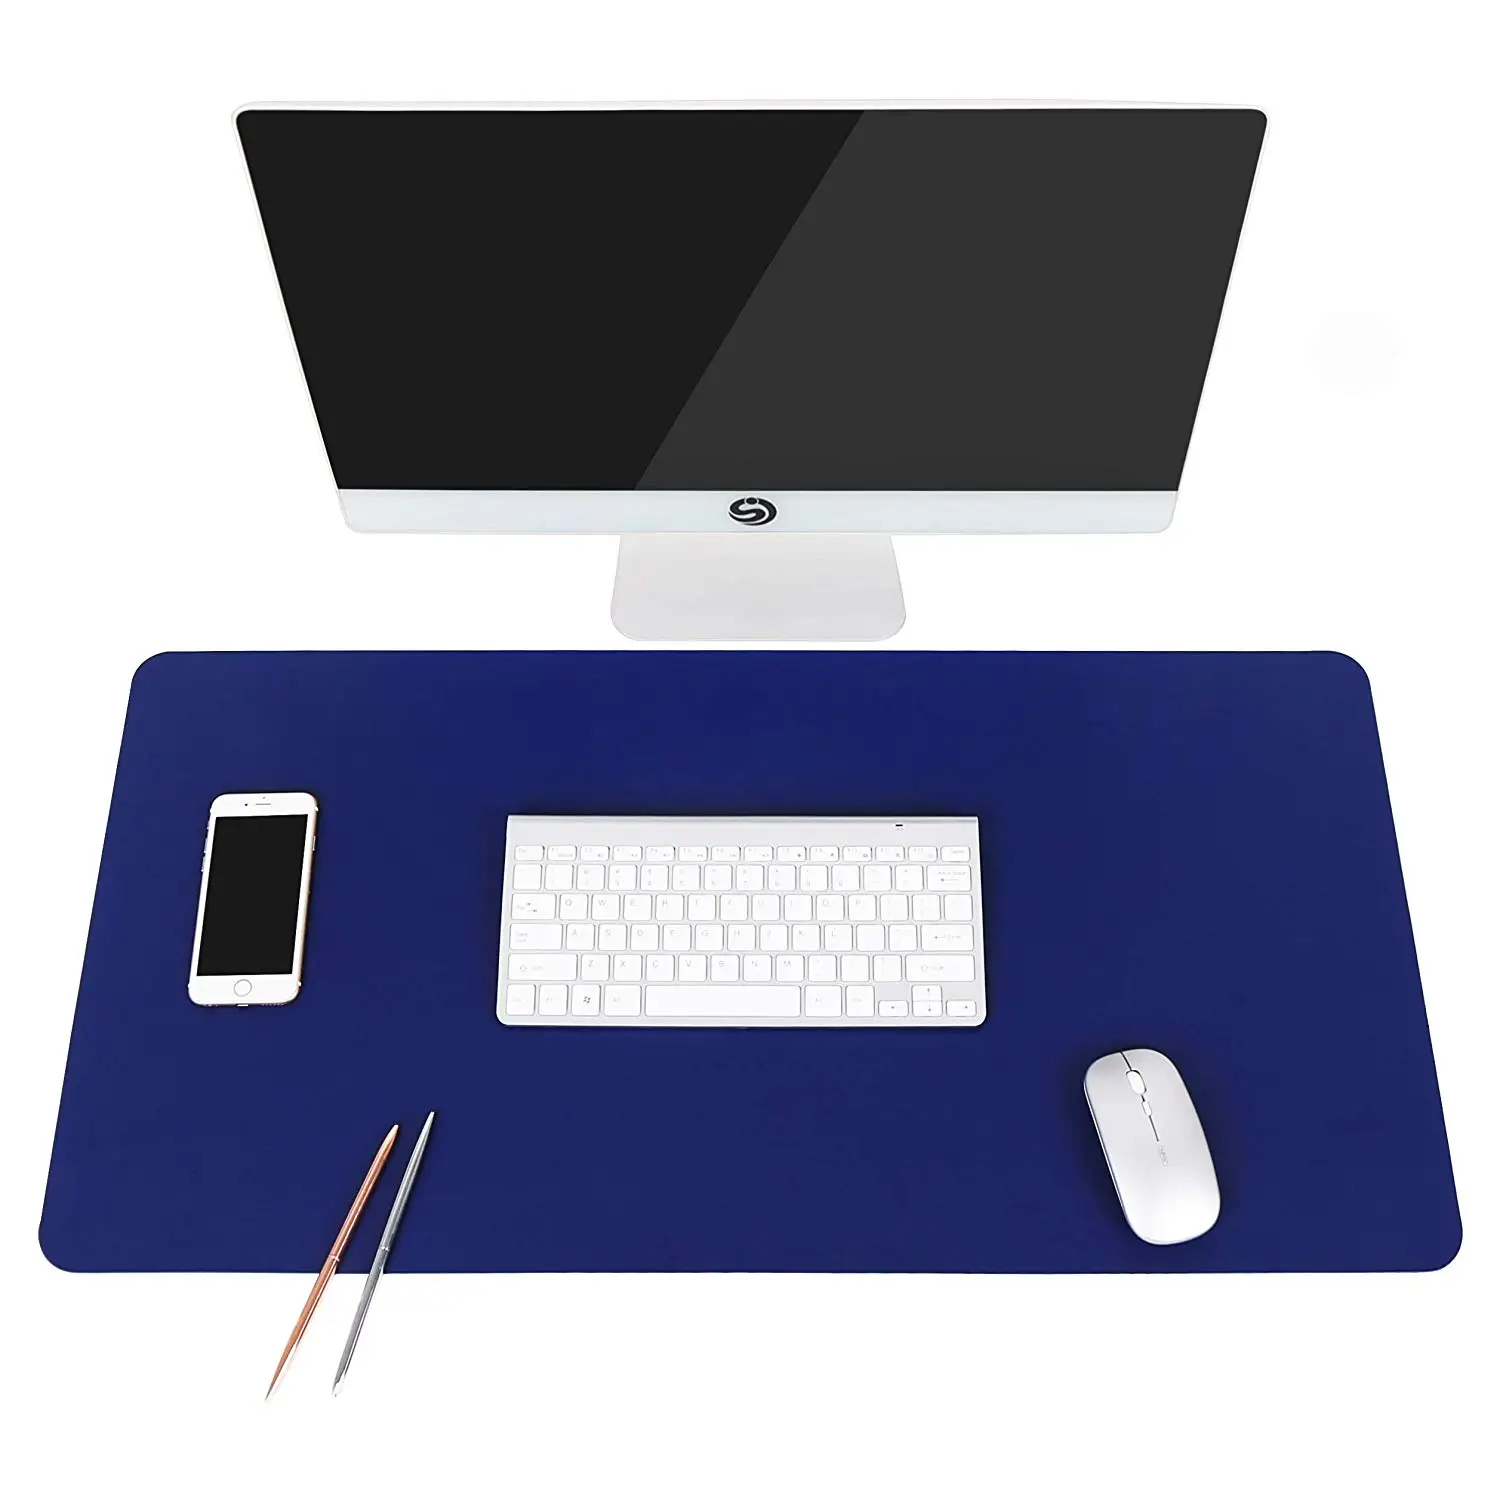 

80x40 см ультра тонкий водонепроницаемый ПВХ кожаный коврик для мыши, двойного использования стол письменный коврик для офиса/дома